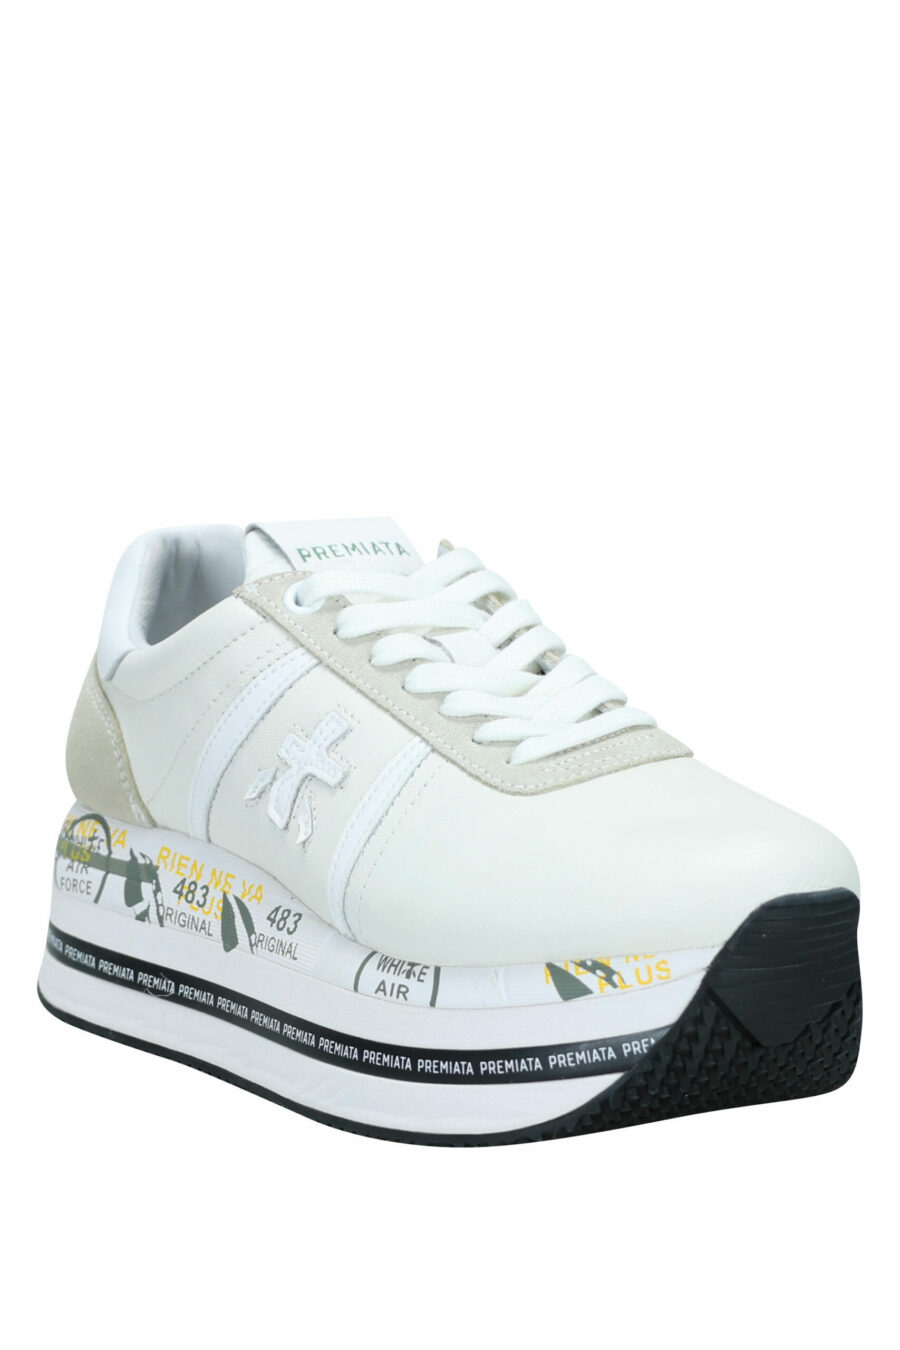 Zapatillas blancas con beige y plataforma "Beth 5603" - 8058325981902 1 scaled